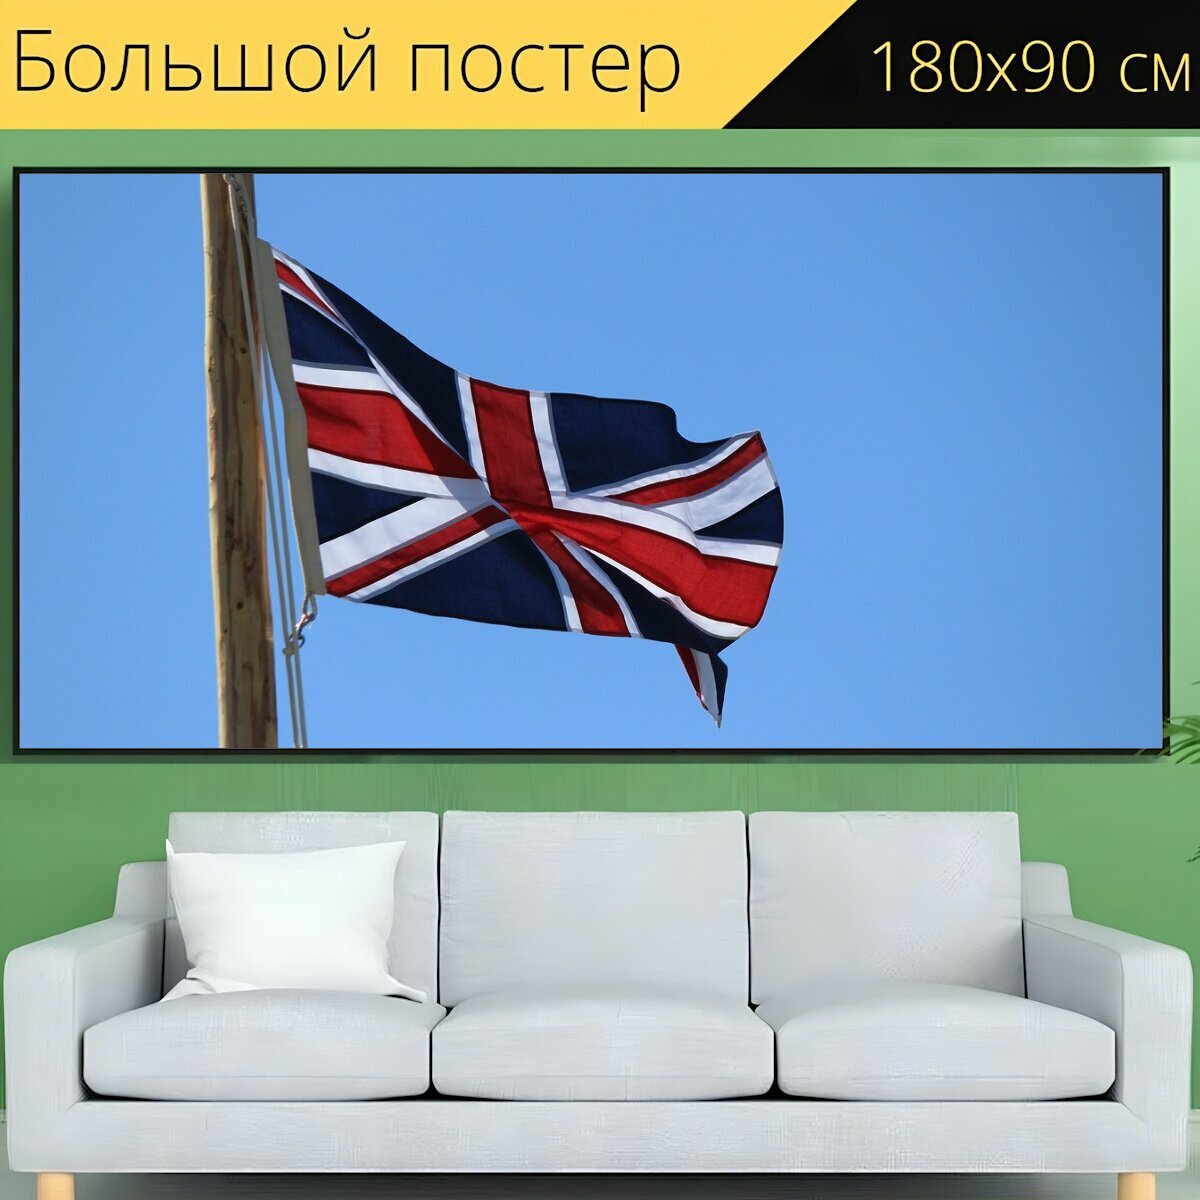 Большой постер "Британский, флаг, великобритания" 180 x 90 см. для интерьера